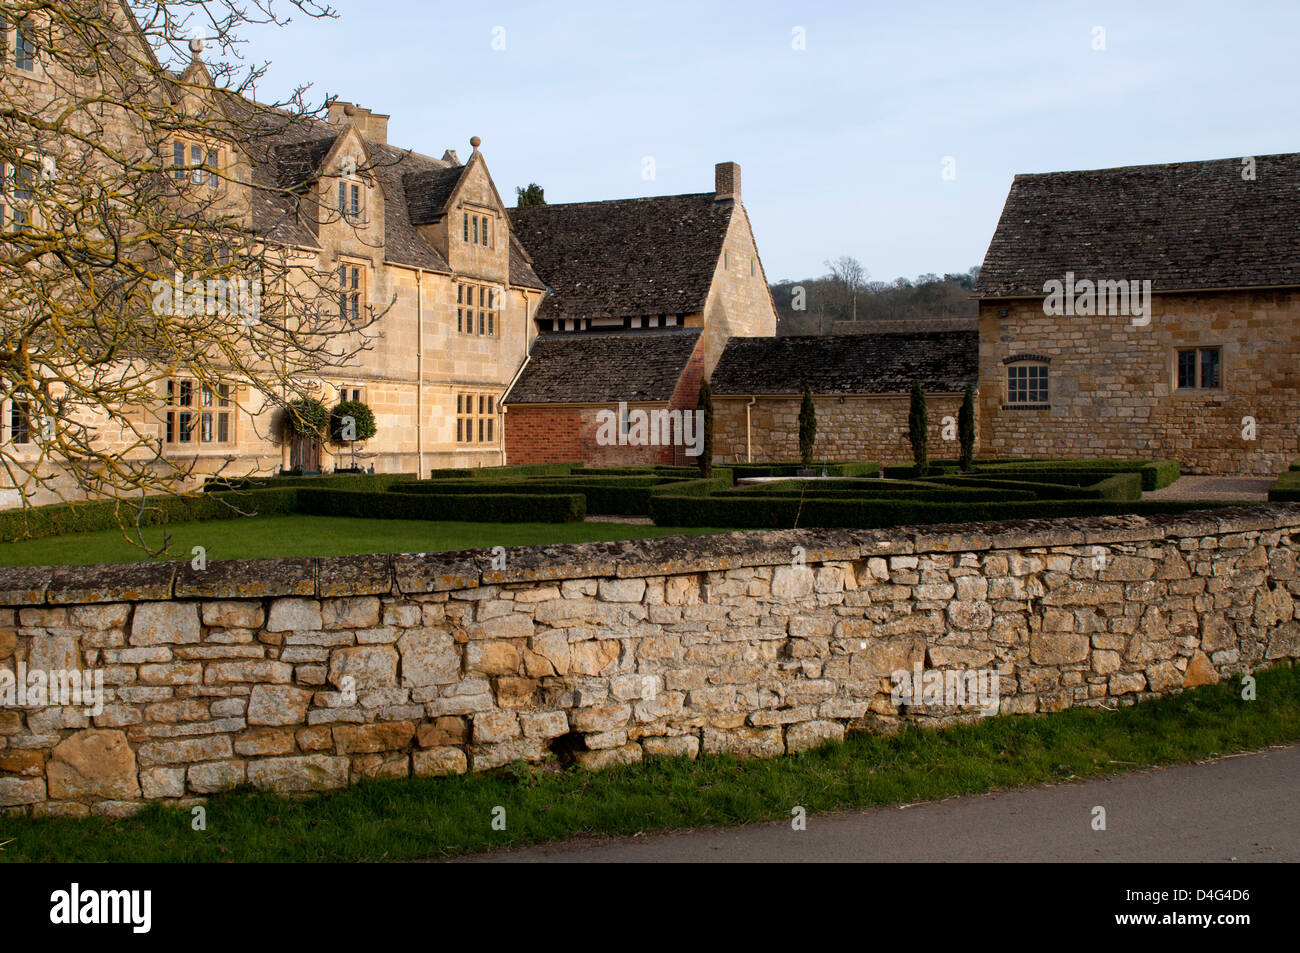 Aston Subedge Manor, Gloucestershire, England, UK Stock Photo